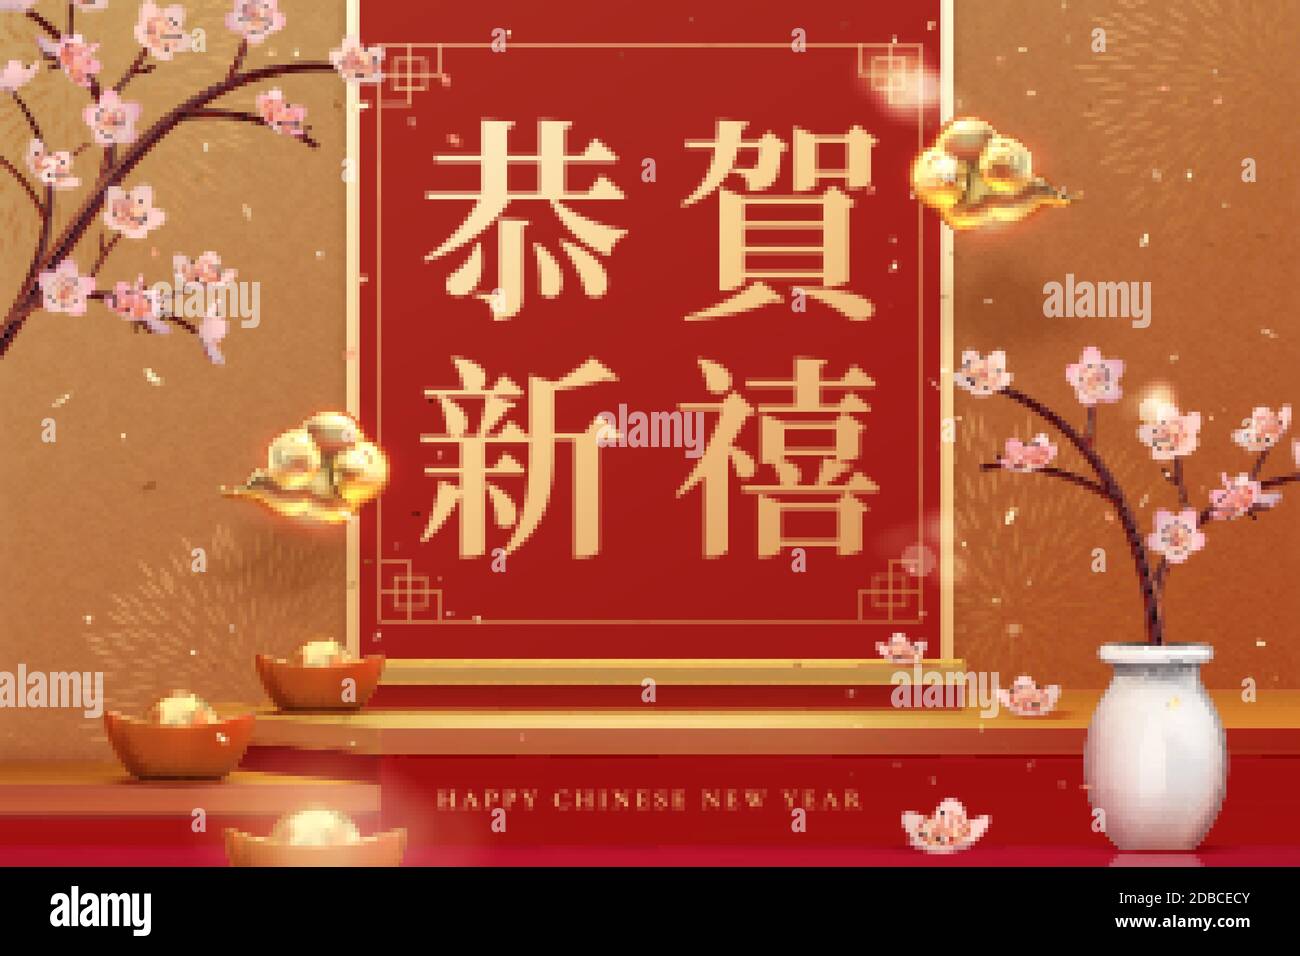 Conception de fond année lunaire avec des lingots et des fleurs de cerisier comme décoration, traduction chinoise: Meilleurs voeux pour l'année comping Illustration de Vecteur